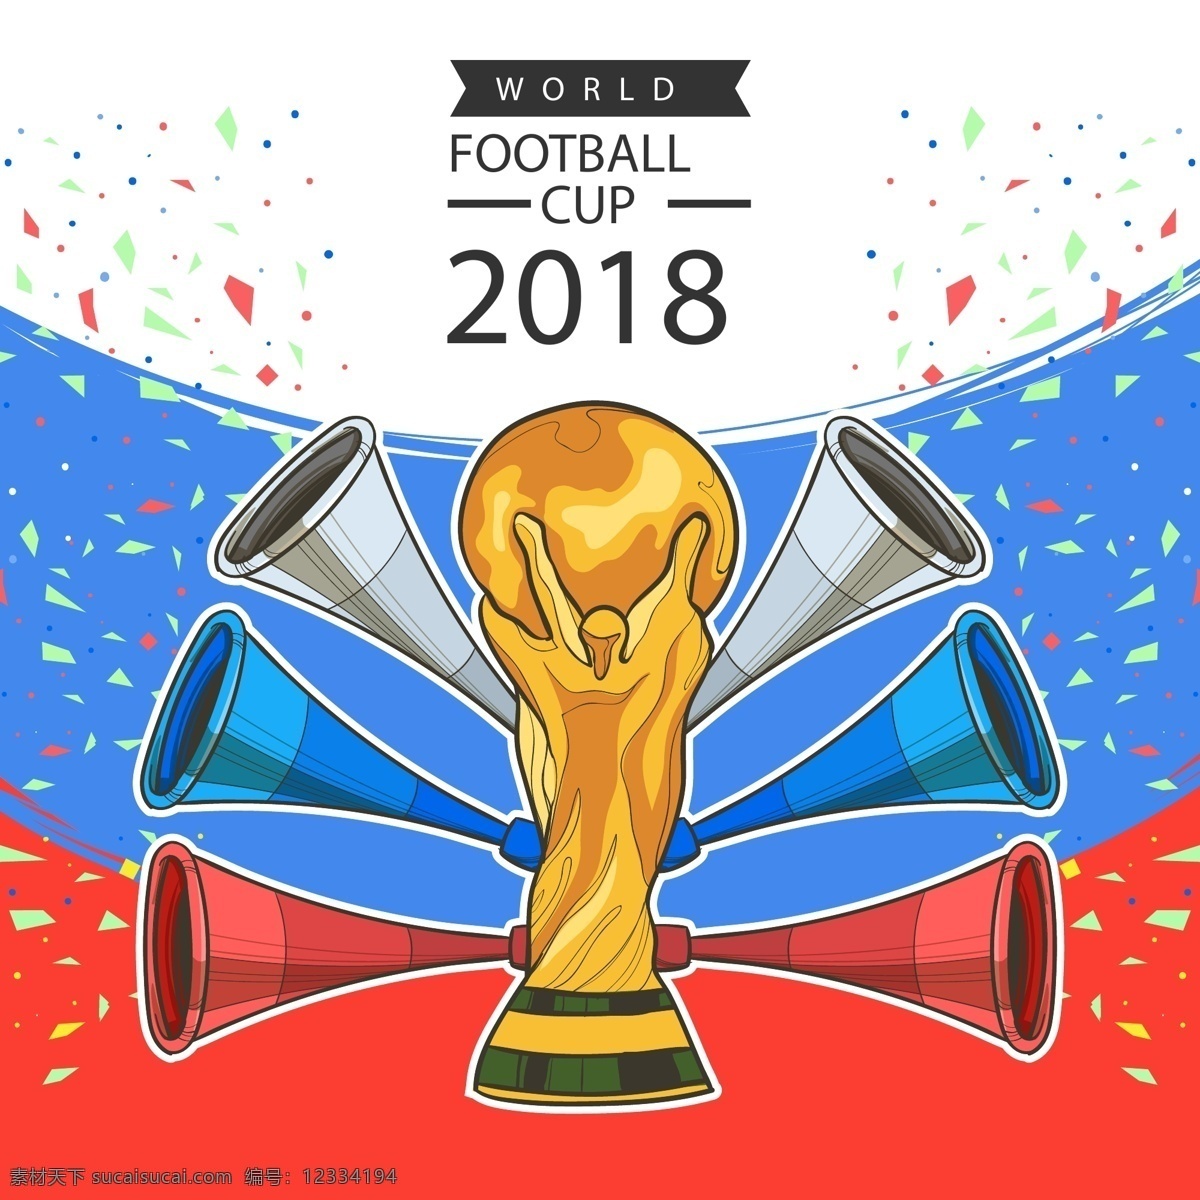 2018 世界 足球 杯 矢量 卡通 奖杯 金色 世界杯 花瓣 比赛 体育 竞赛 扁平 喝彩